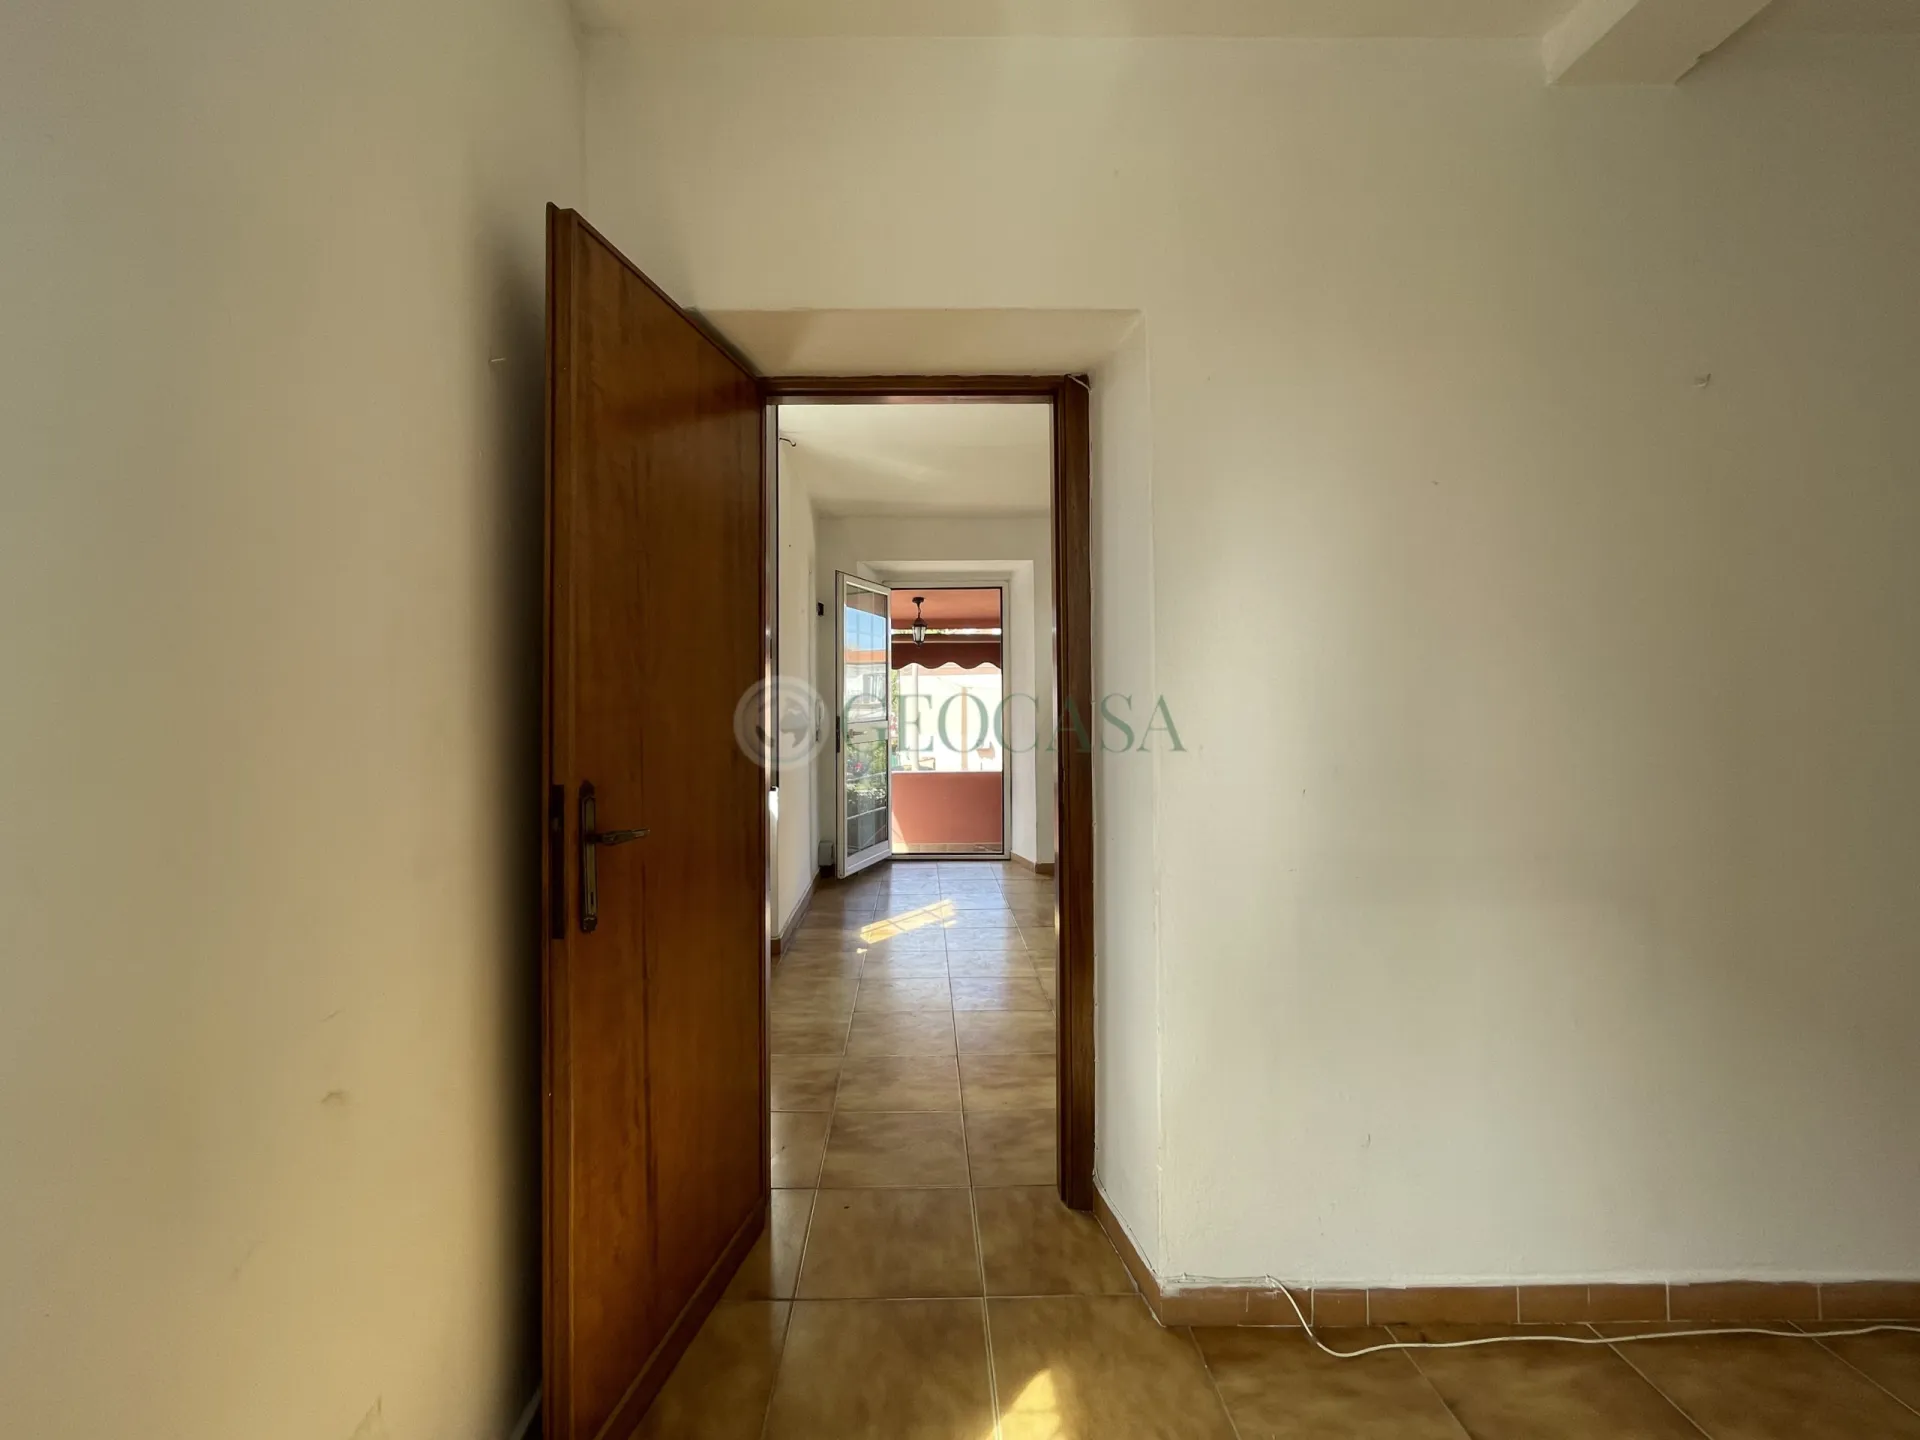 Immagine per Quadrilocale in vendita a Sarzana via Cisa Traversa I 4C